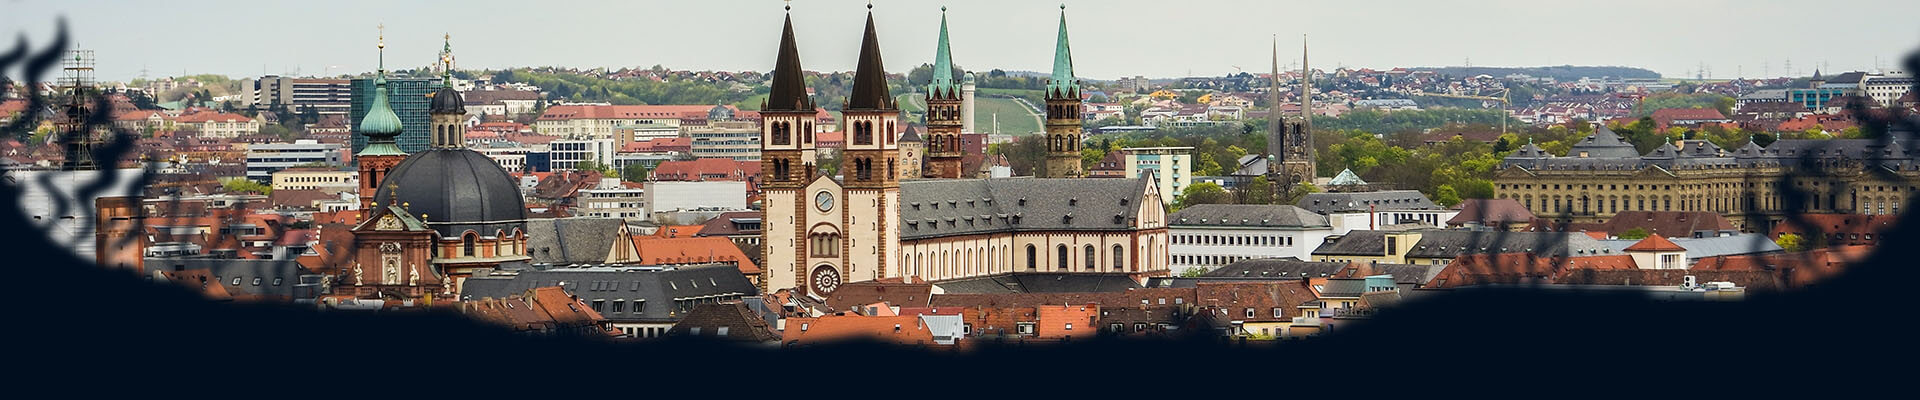 Kopfgrafik mit Blick auf Würzburg